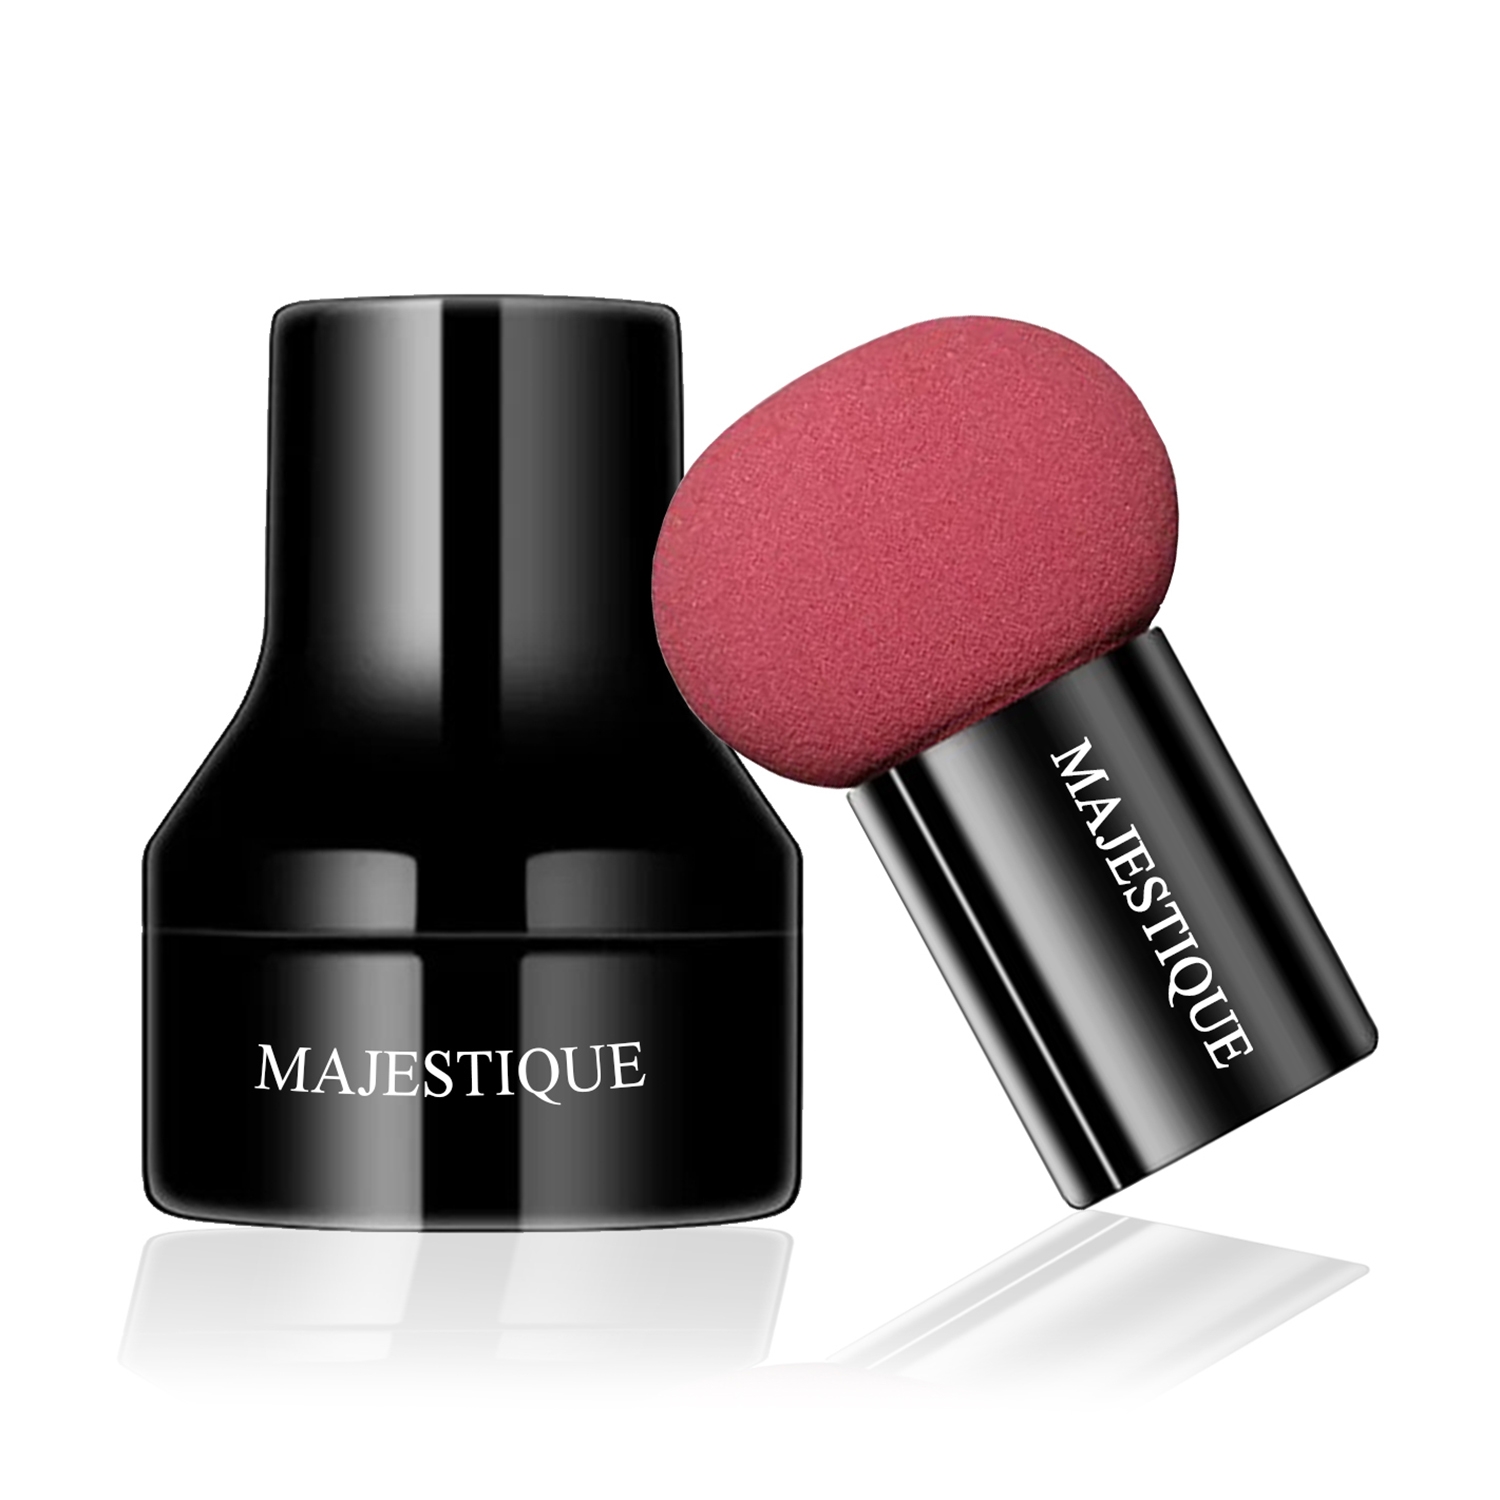 Majestique | Majestique Makeup Mushroom Beauty Blender (Color May Vary)